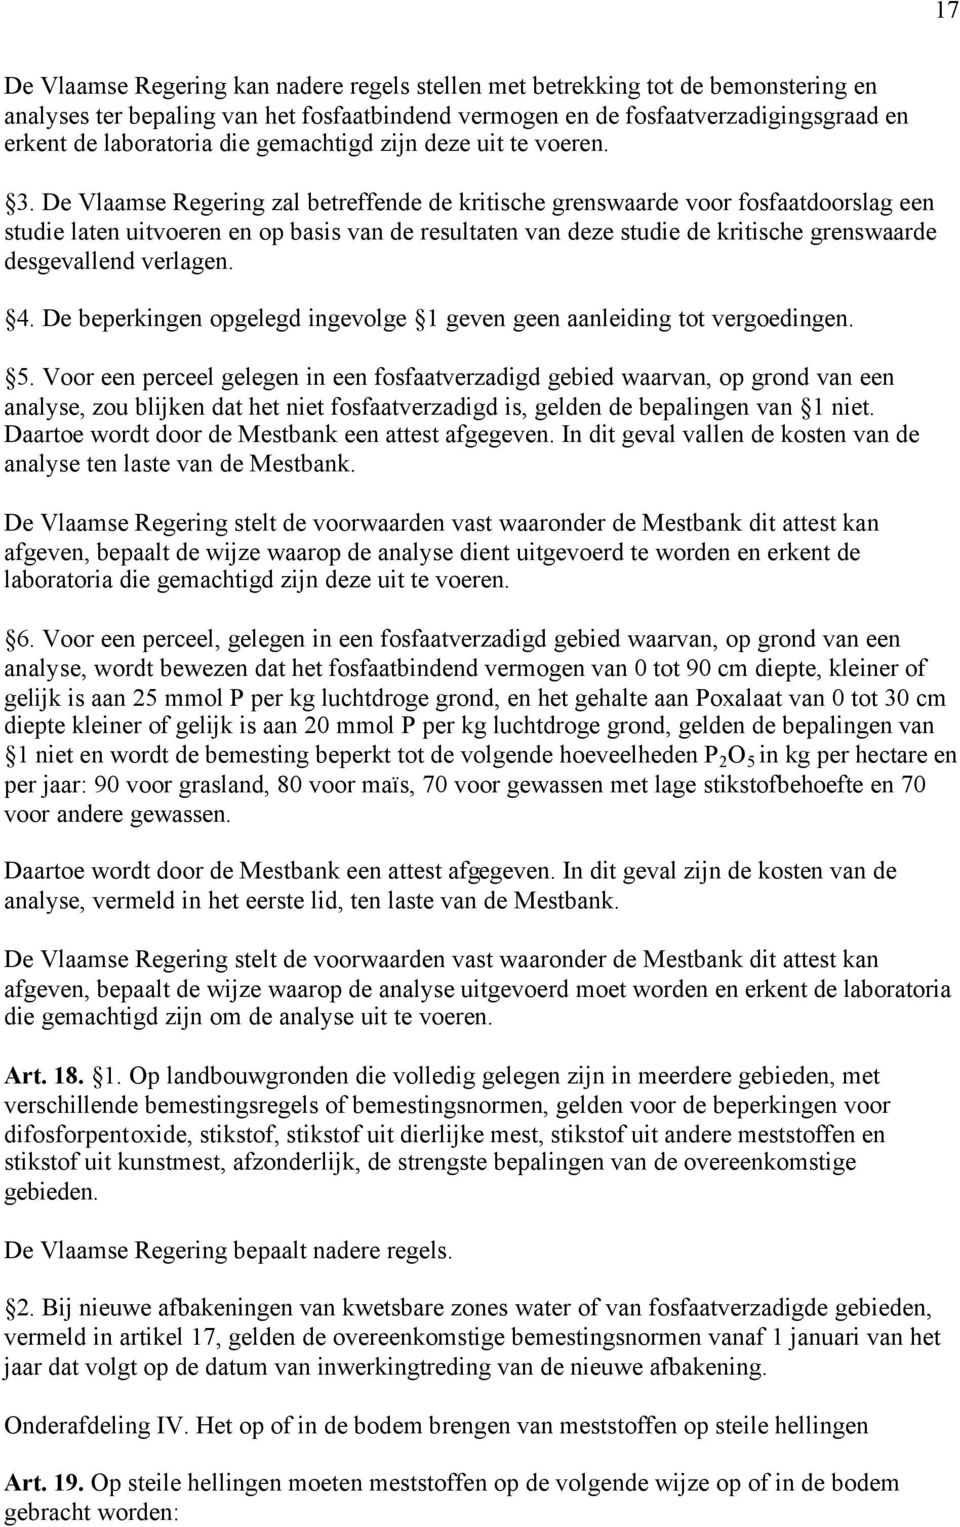 De Vlaamse Regering zal betreffende de kritische grenswaarde voor fosfaatdoorslag een studie laten uitvoeren en op basis van de resultaten van deze studie de kritische grenswaarde desgevallend